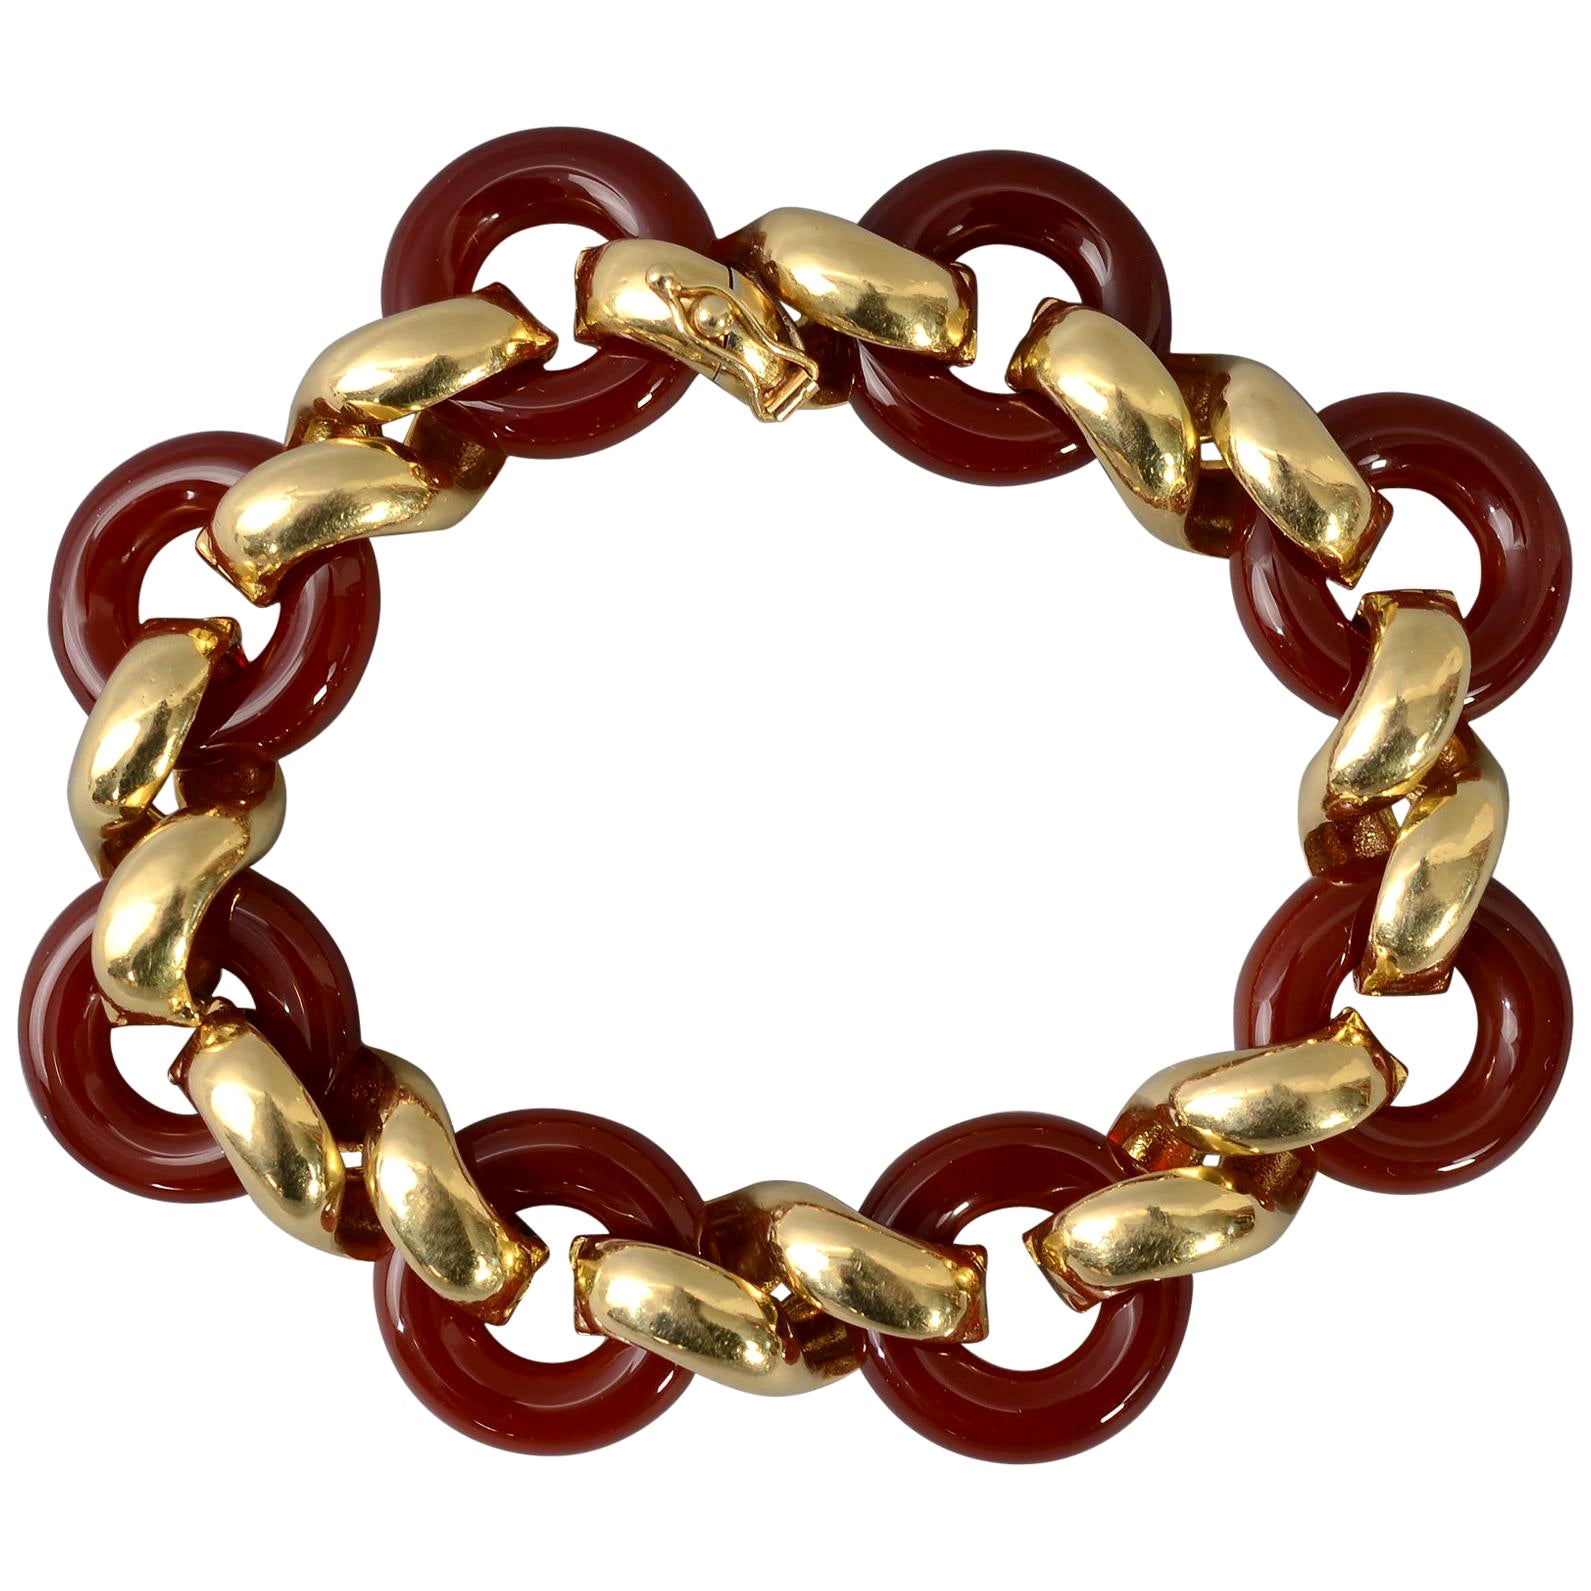 Van Cleef & Arpels Carnelian Gold Bracelet